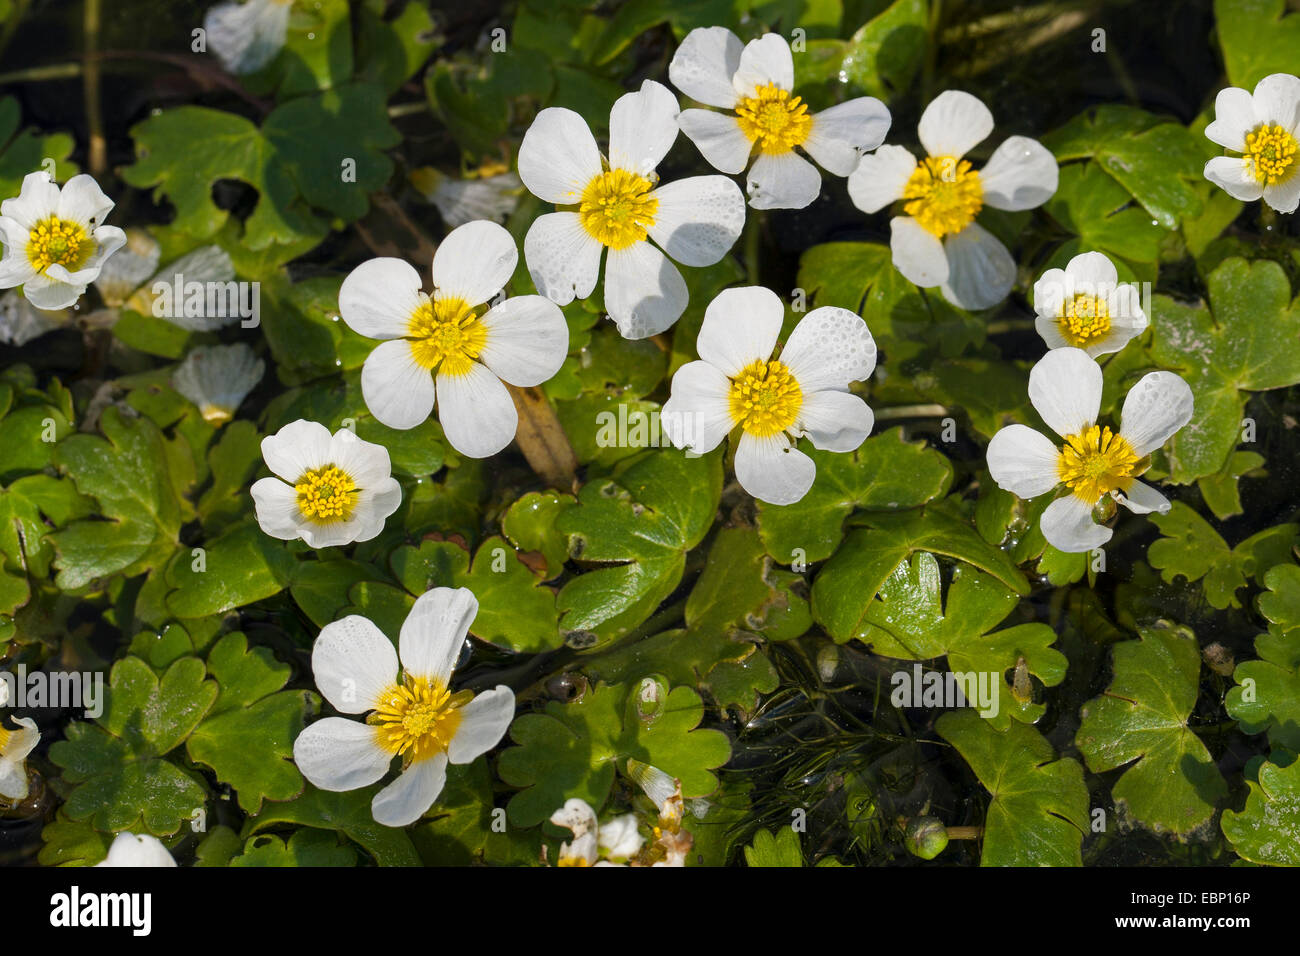 Pond Water-crowfoot, Pond Water crowfoot (Ranunculus peltatus, Ranunculus aquatilis ssp. peltatus), blooming, Germany Stock Photo